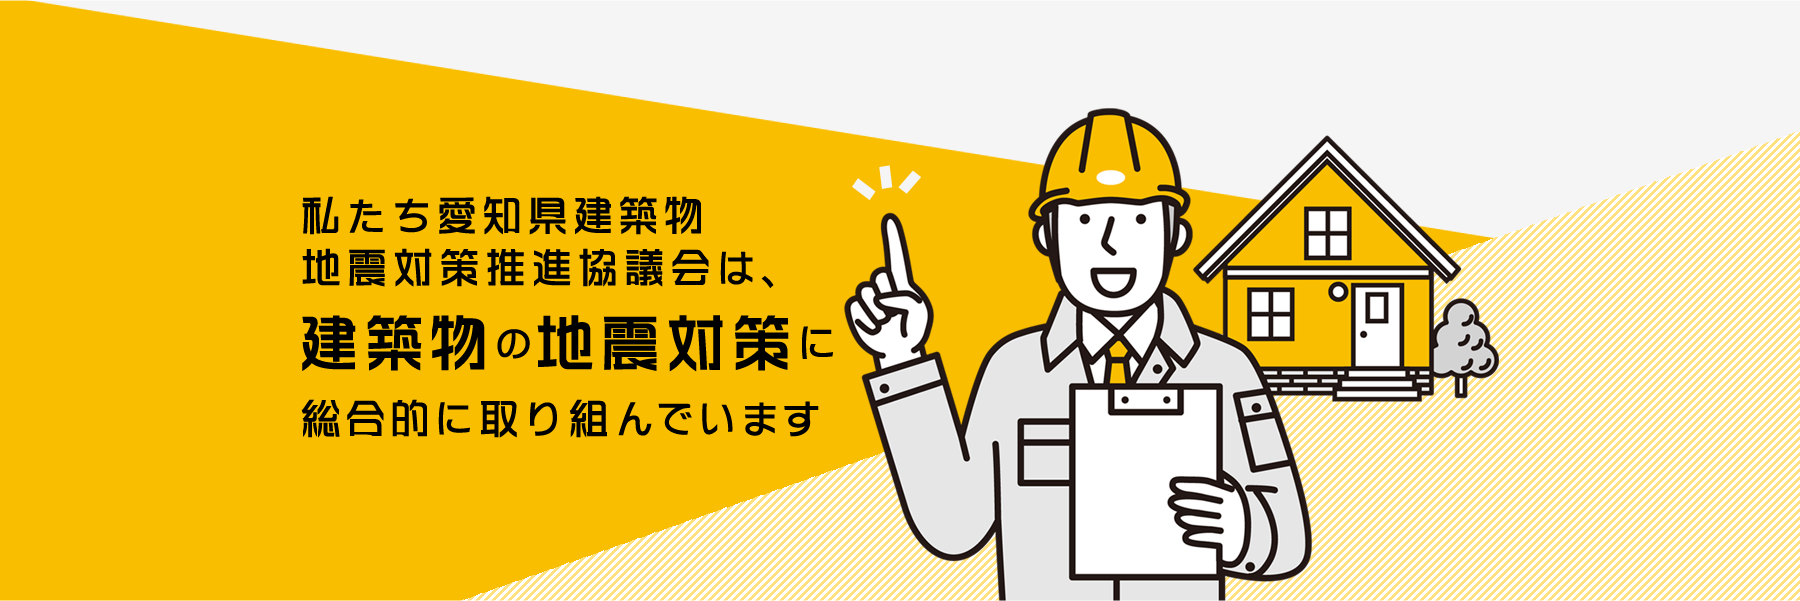 私たち愛知県建築物地震対策推進協議会は、建築物の地震対策に総合的に取り組んでいます